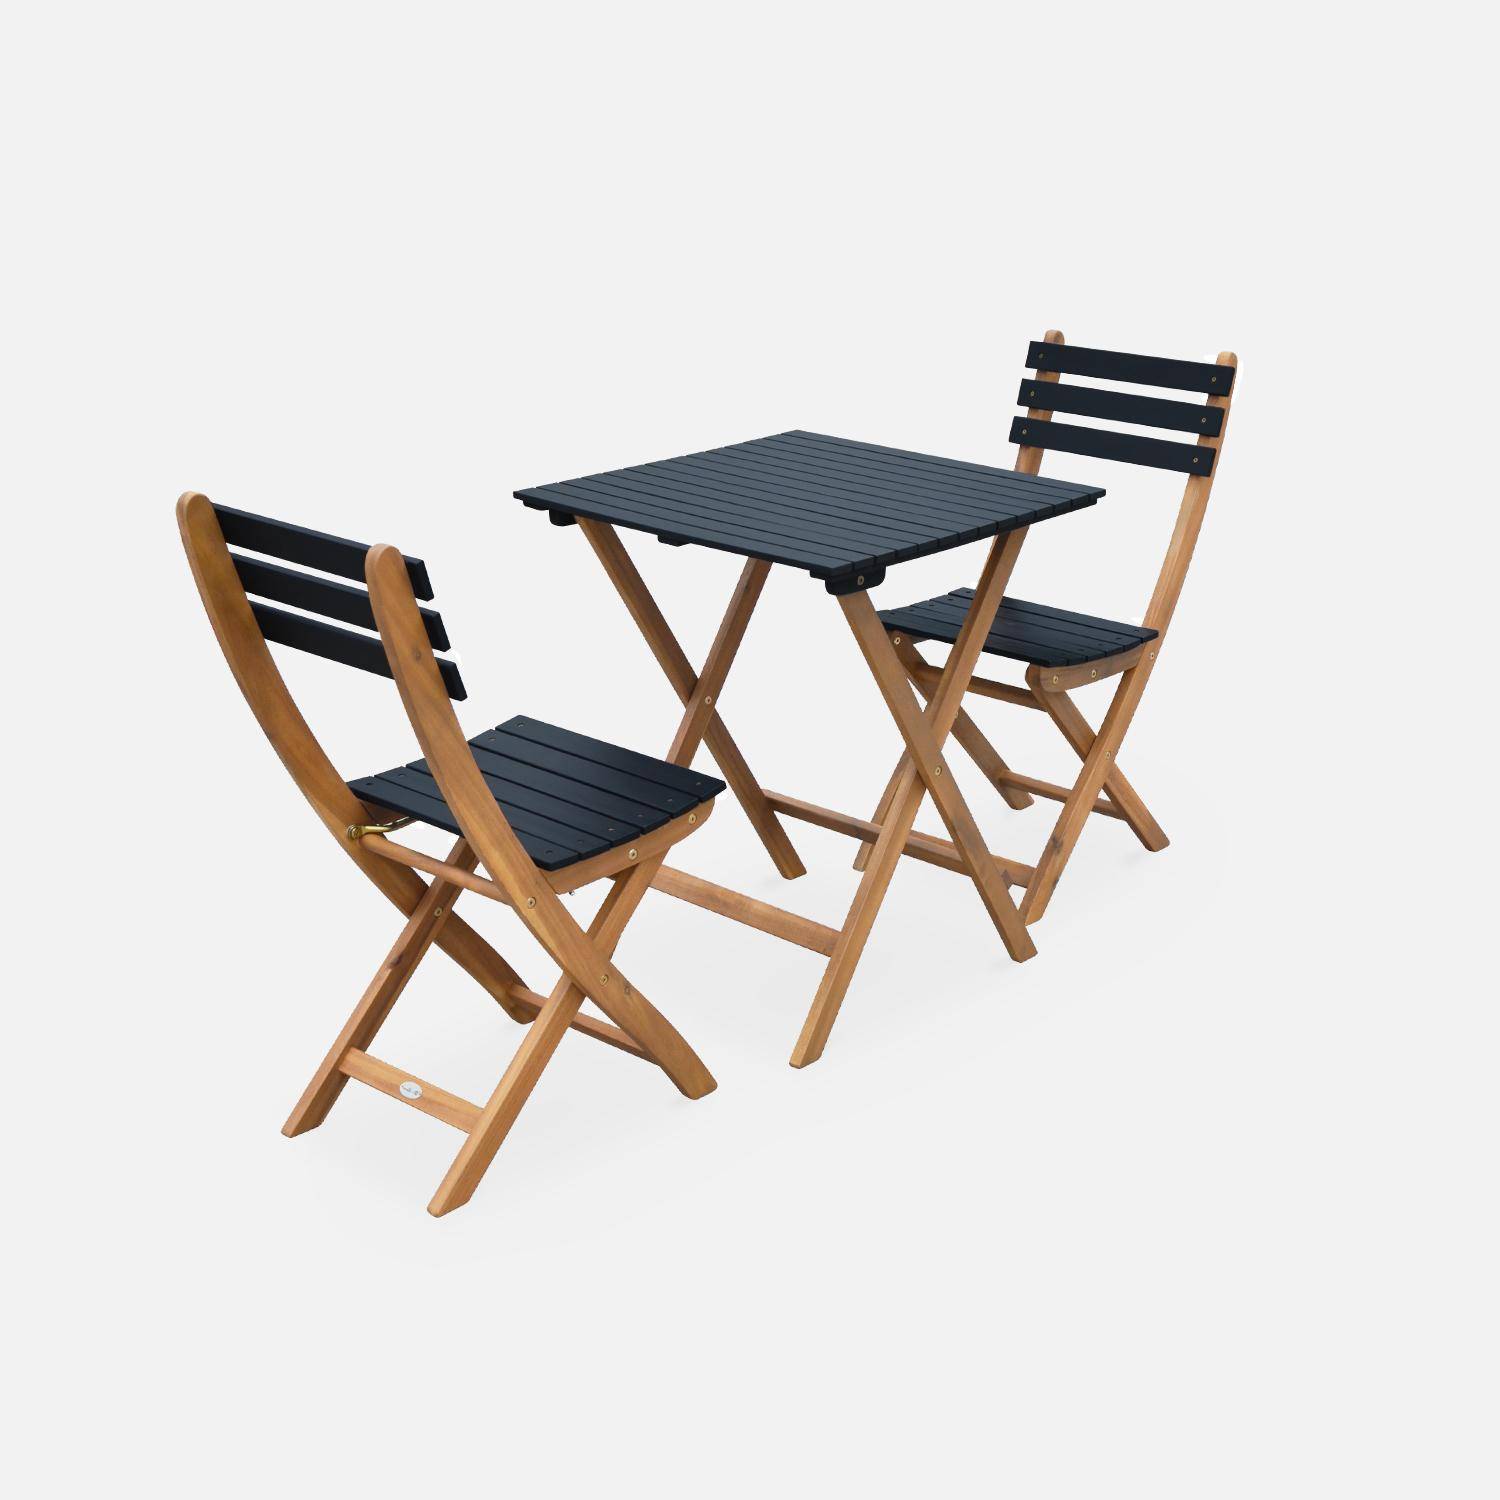 Mesa de jardín de madera Bistro plegable cuadrada. 2 sillas plegables,